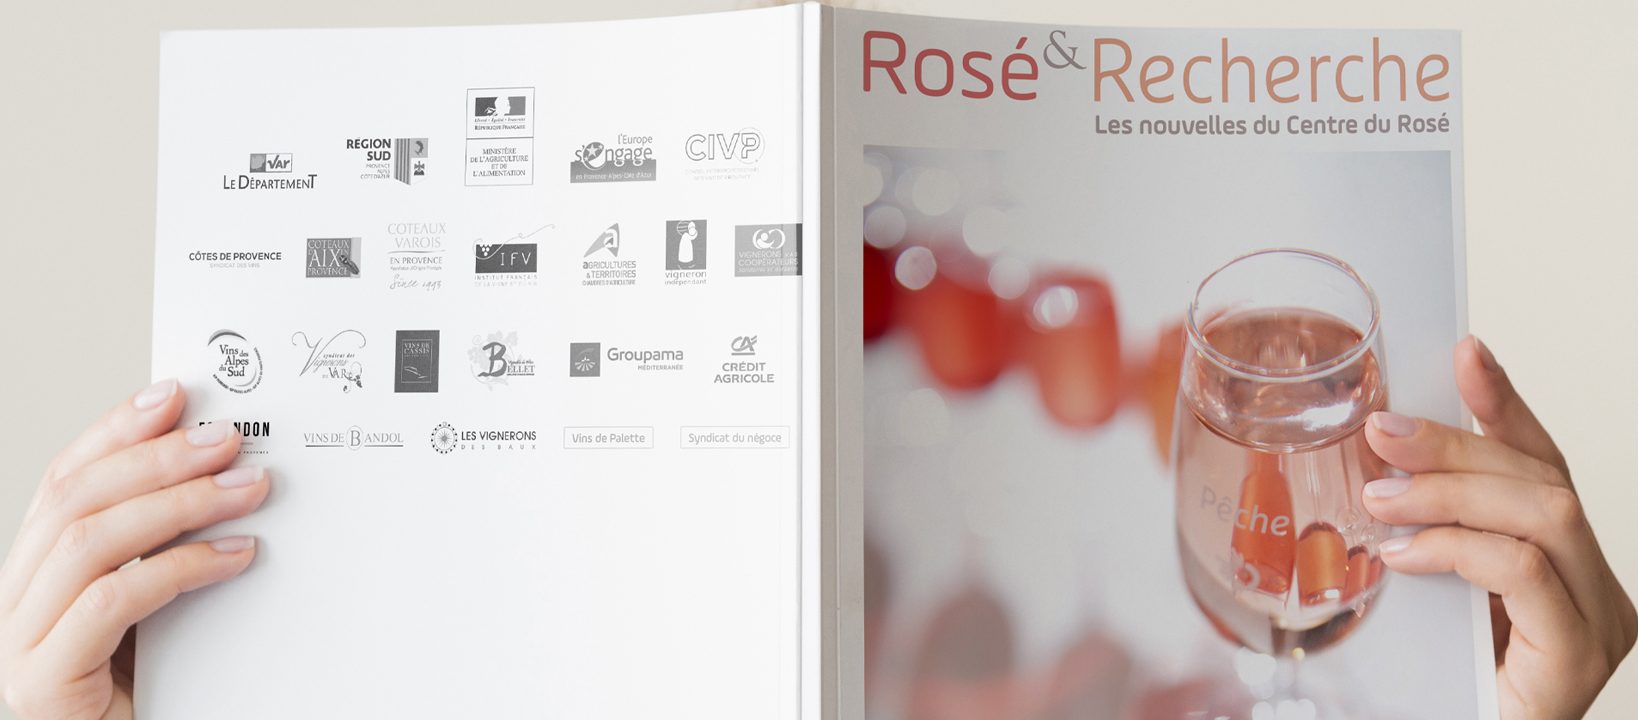 Rosé & Recherche